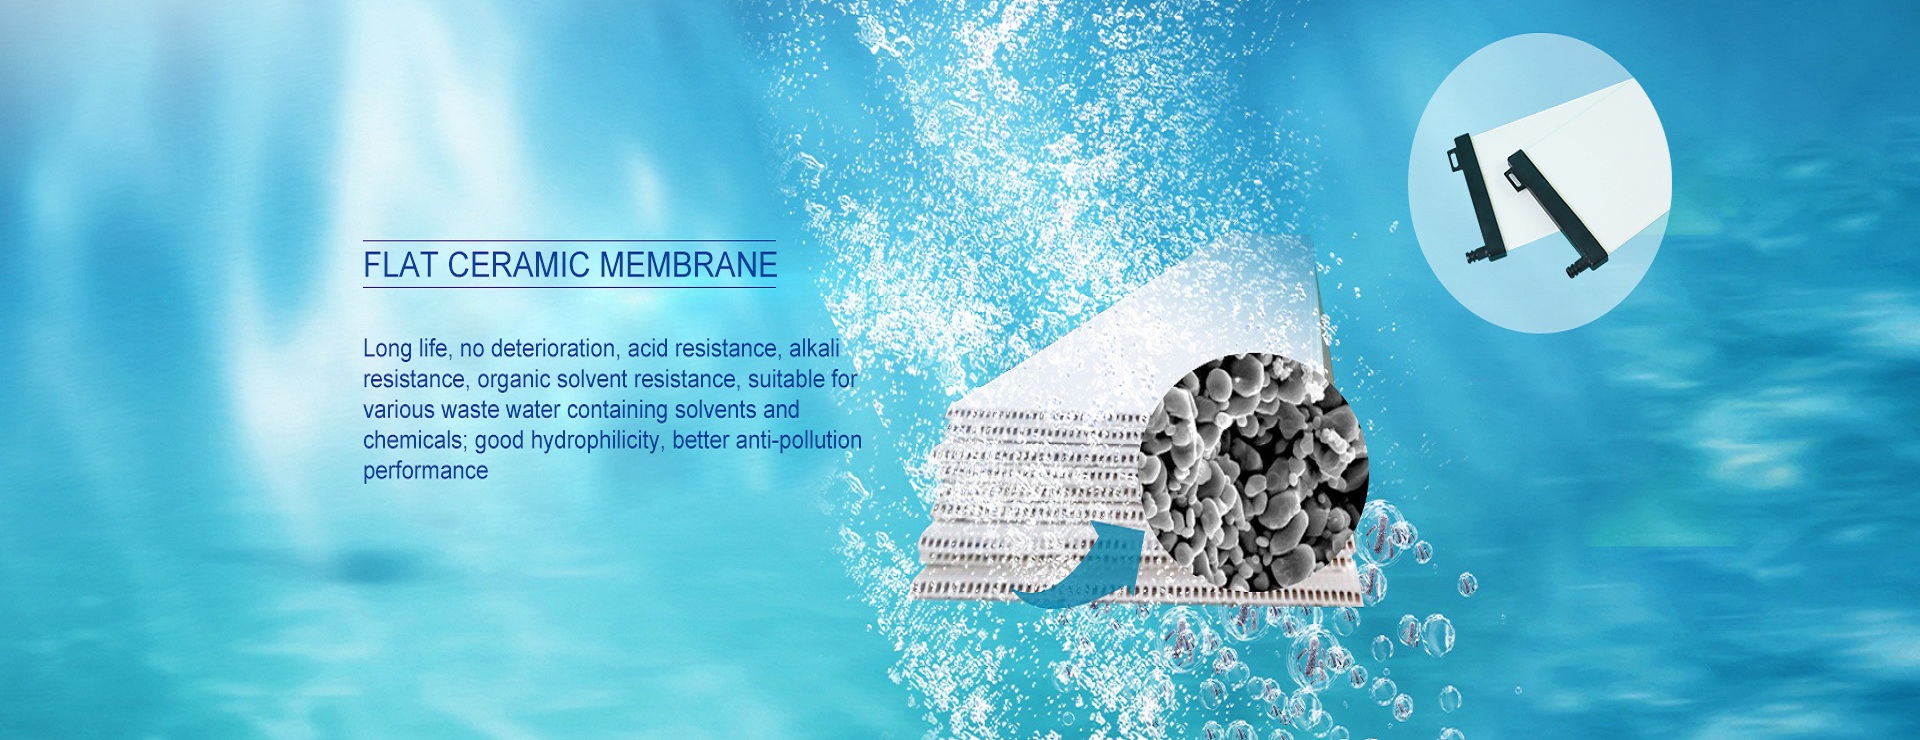 ceramic flat membrane